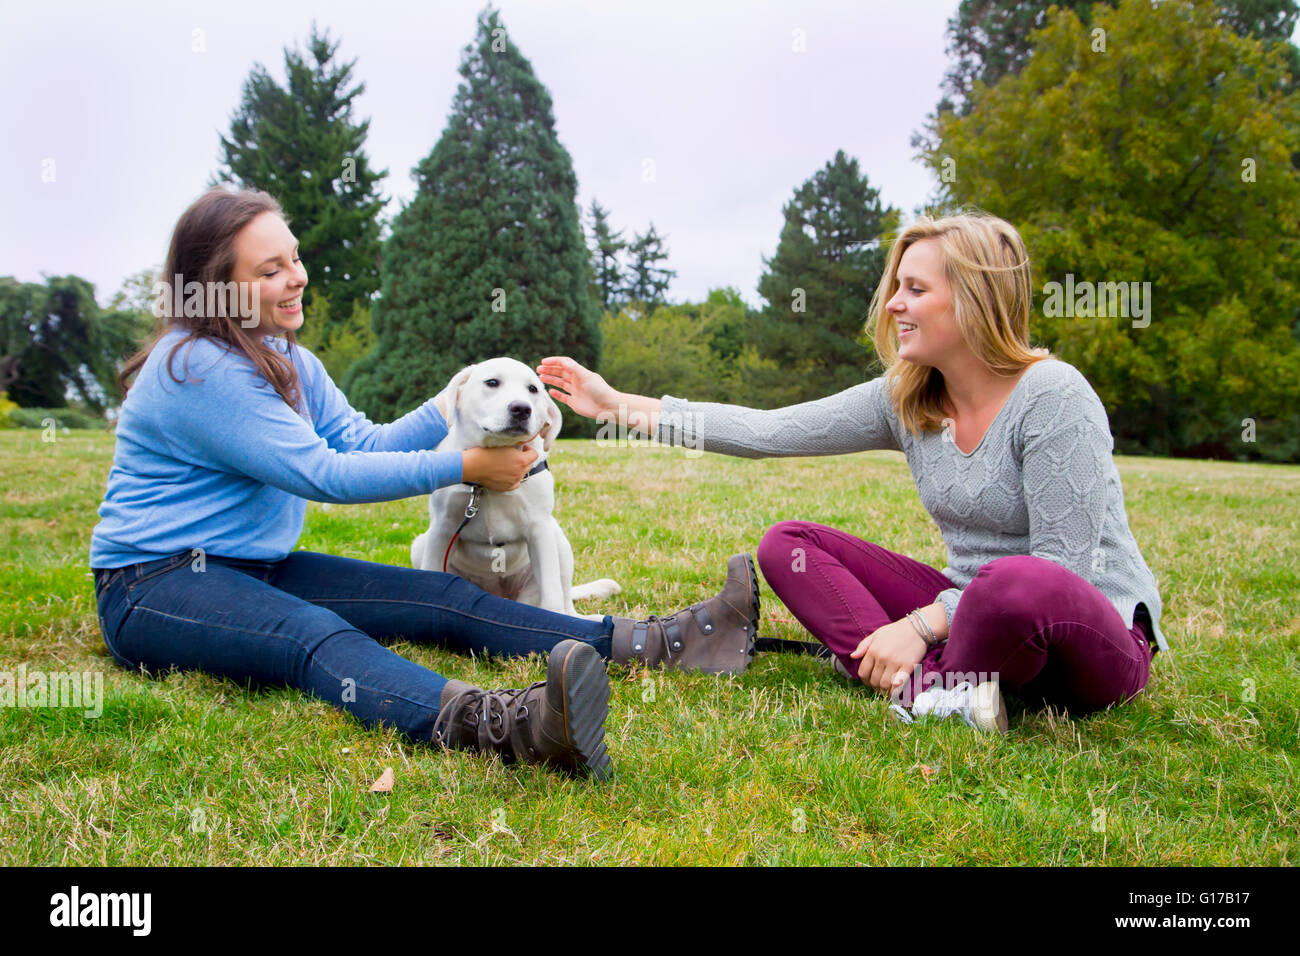 Dos mujeres jóvenes jugando con el perro en el parque Foto de stock